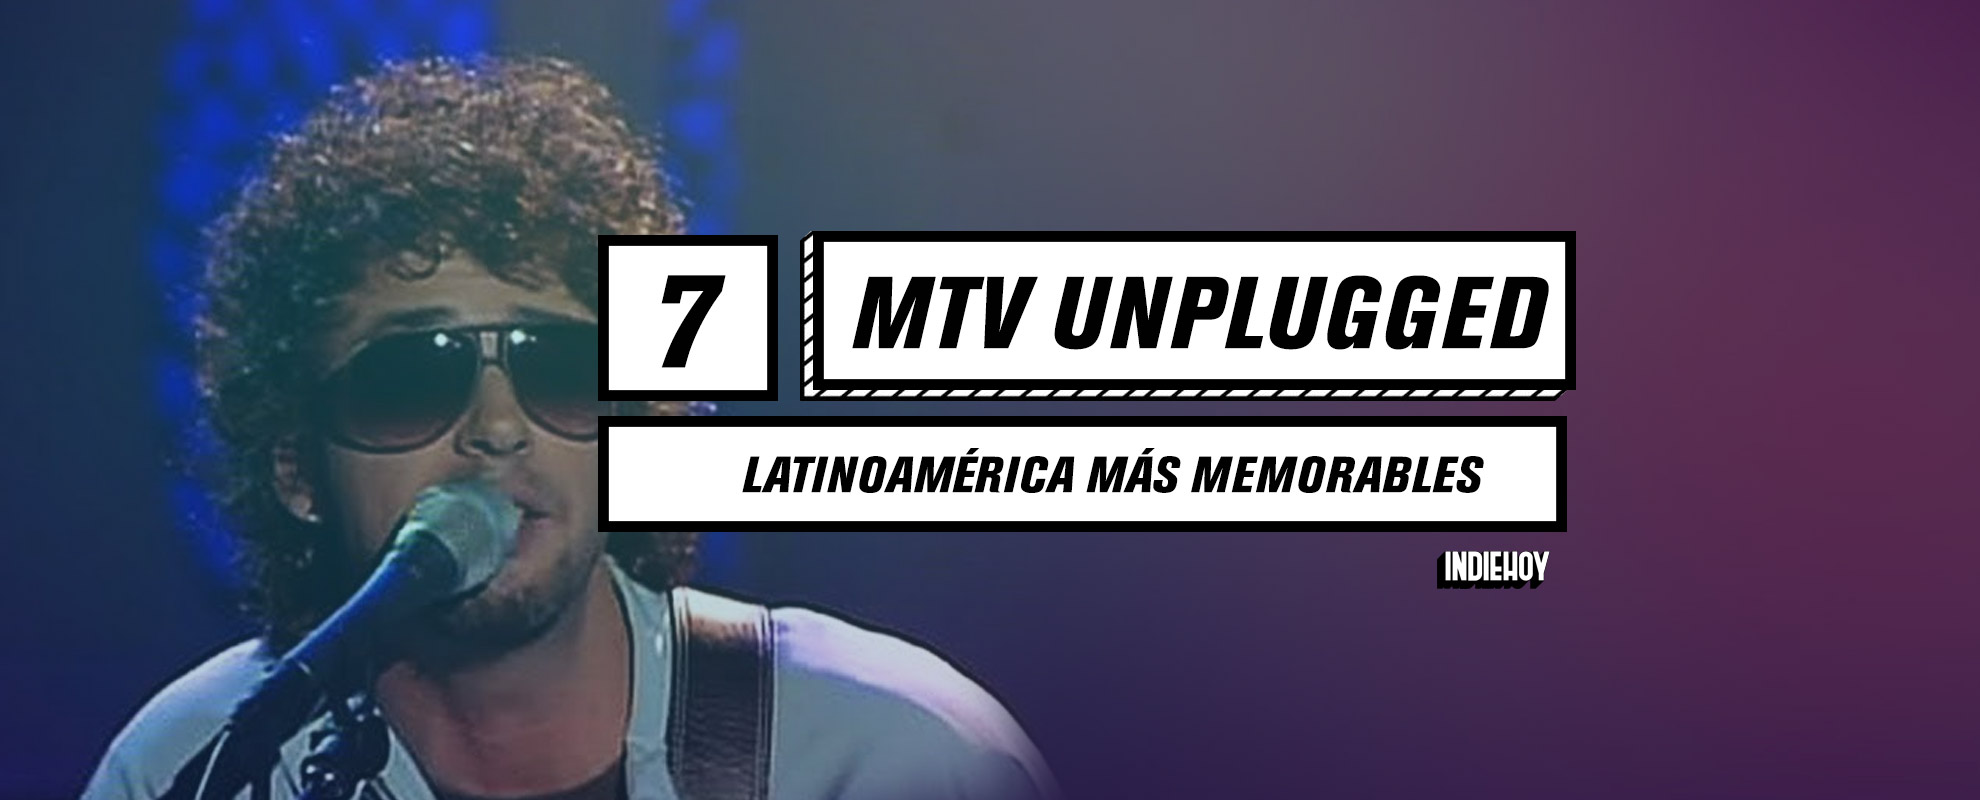 Los 7 MTV Unplugged Latinoamérica más memorables